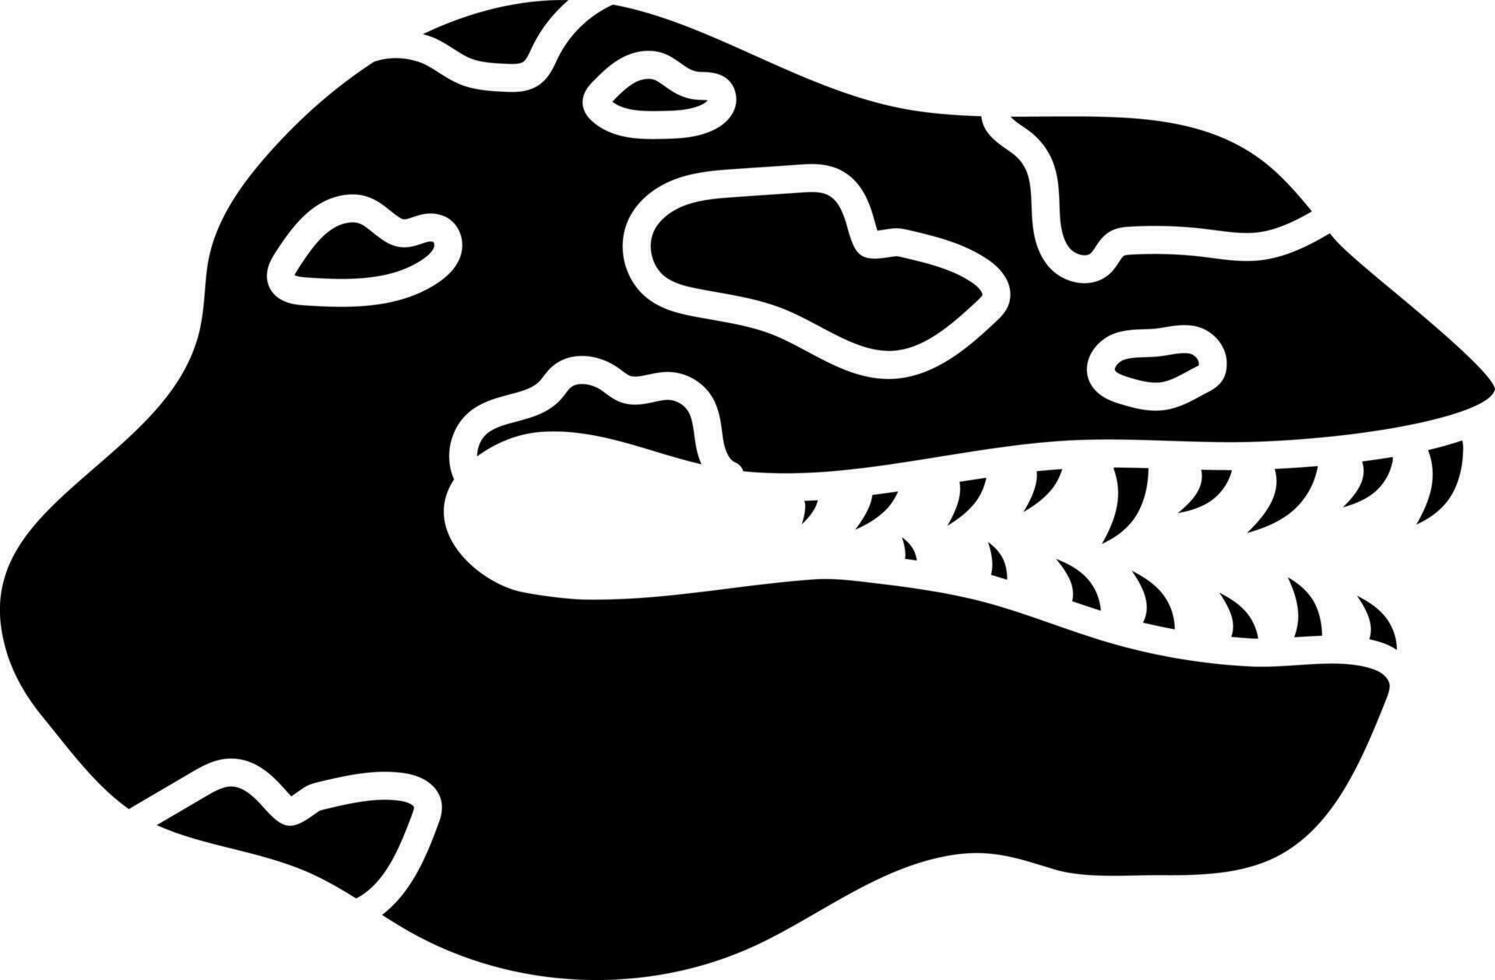 Dinosaur skull icon or symbol. vector